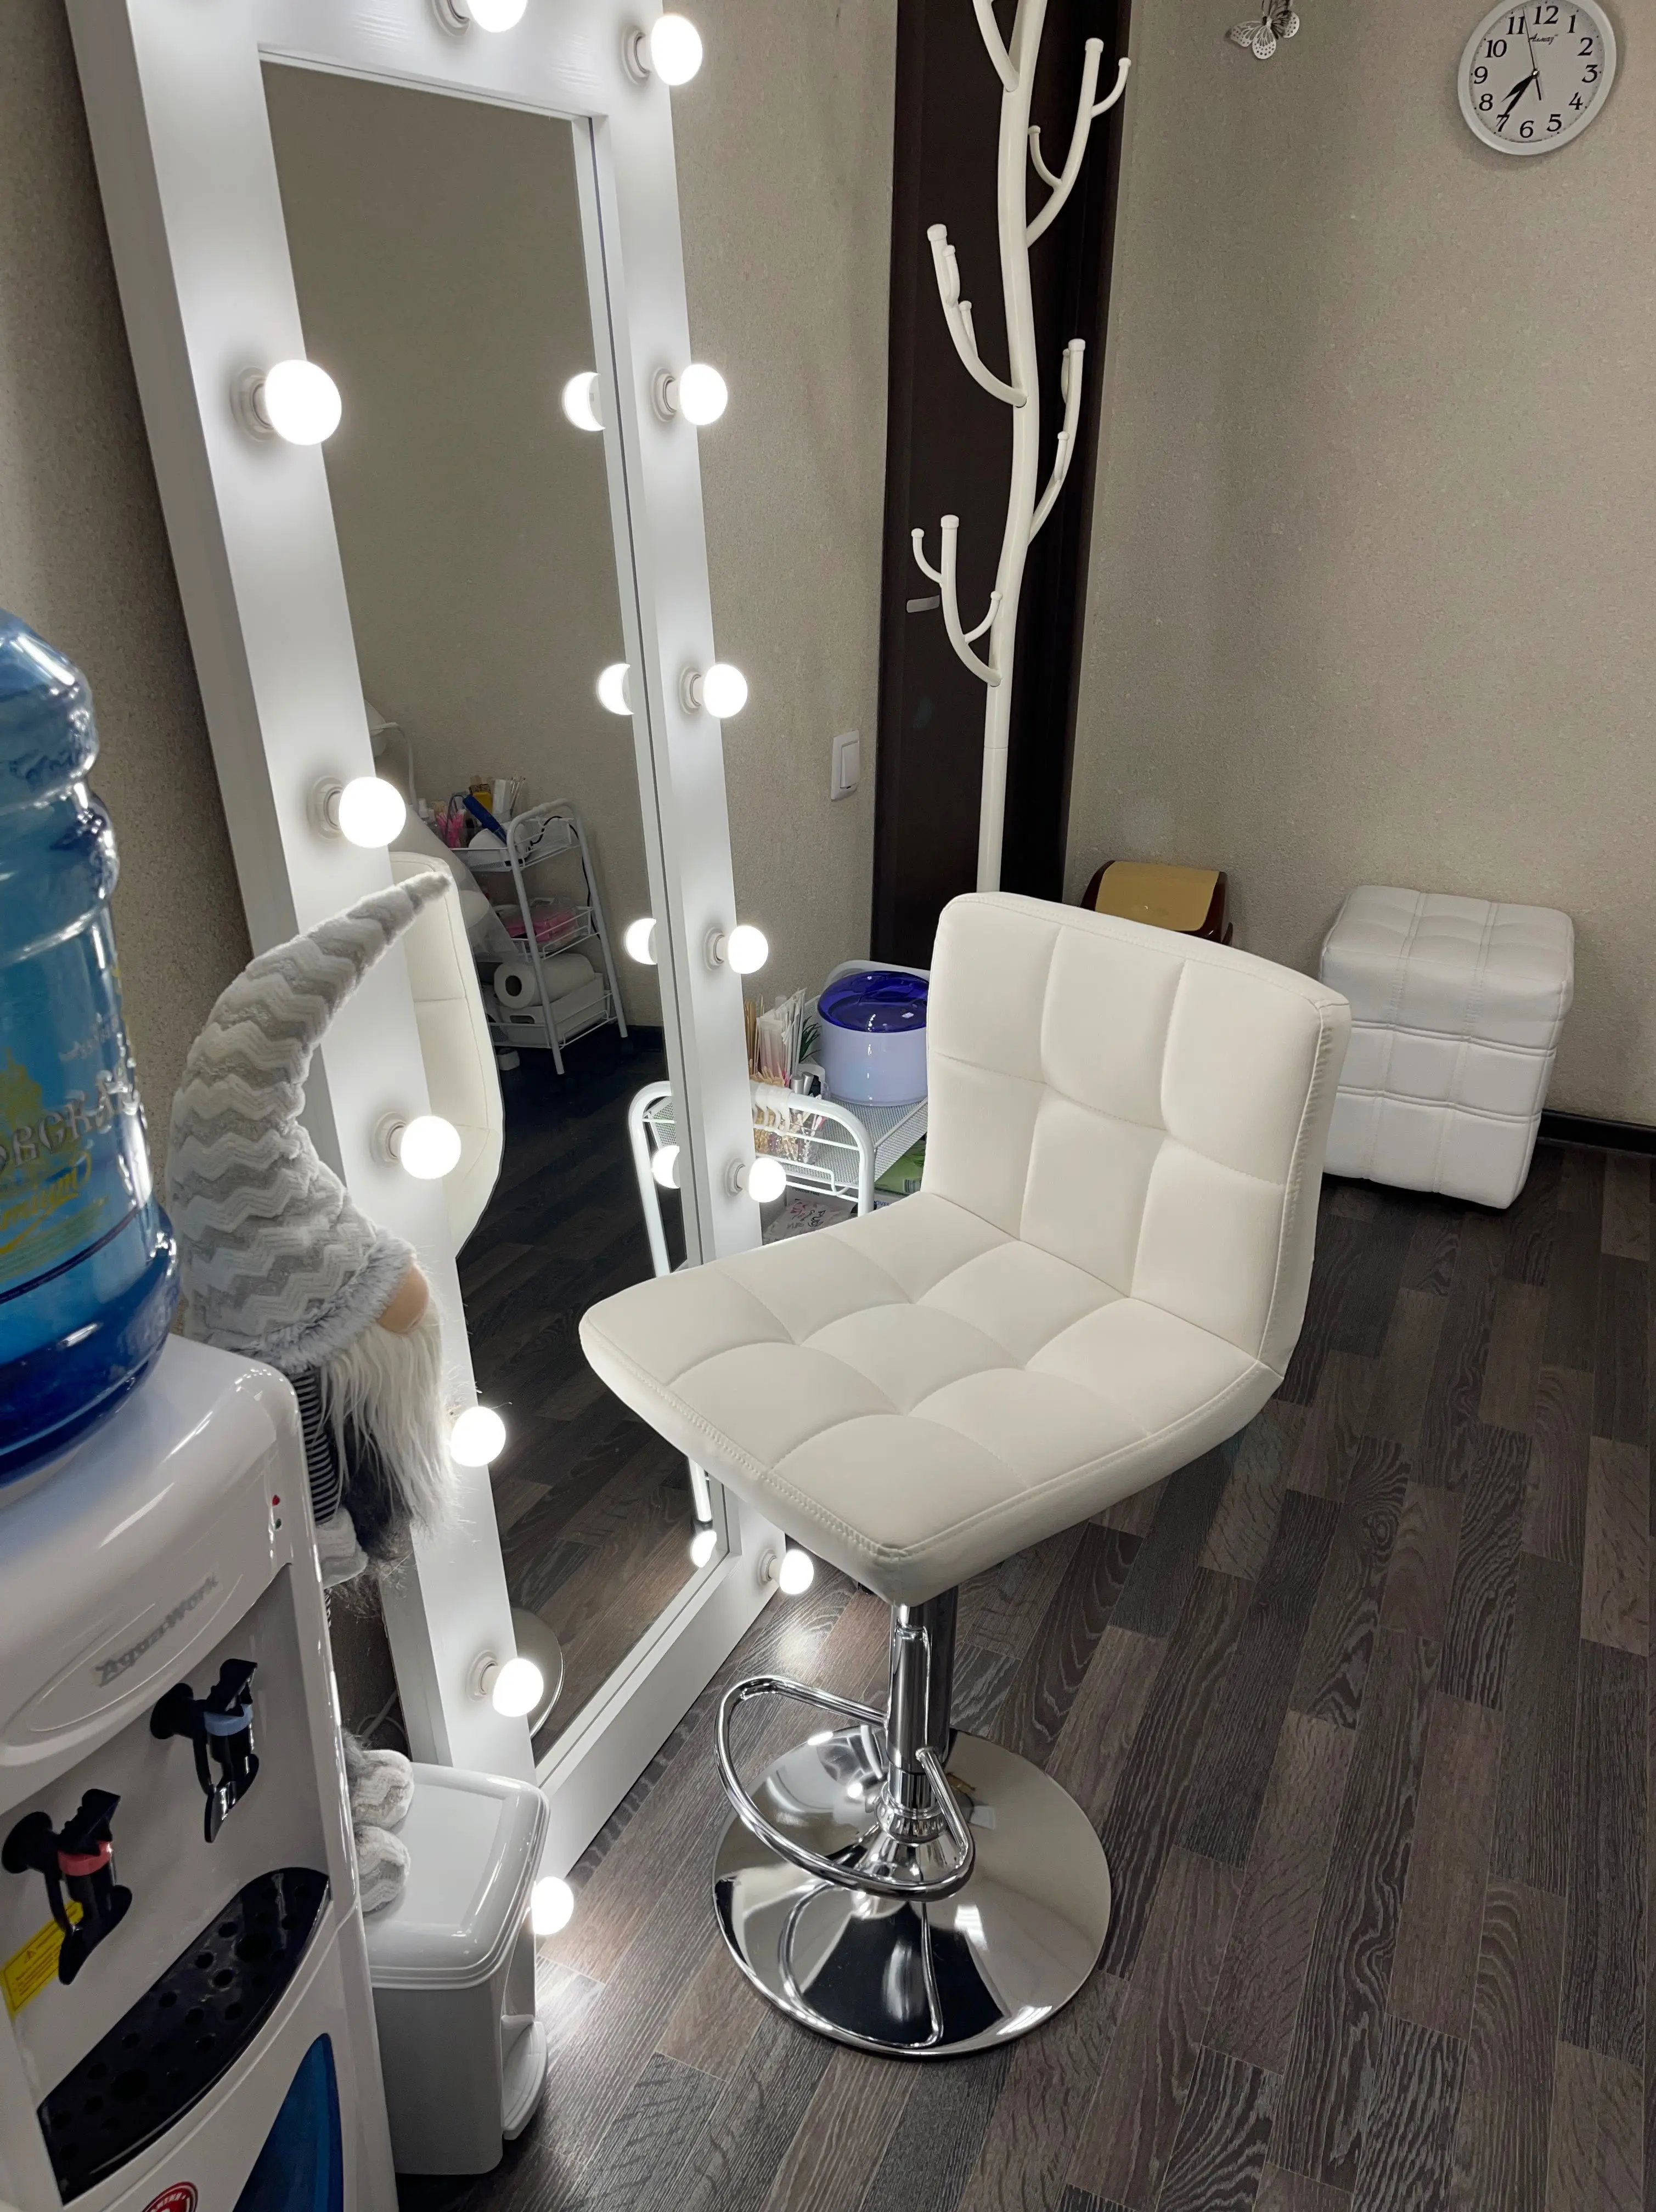 изображение места мастера по бровям: высокого стула перед зеркалом с лампочками